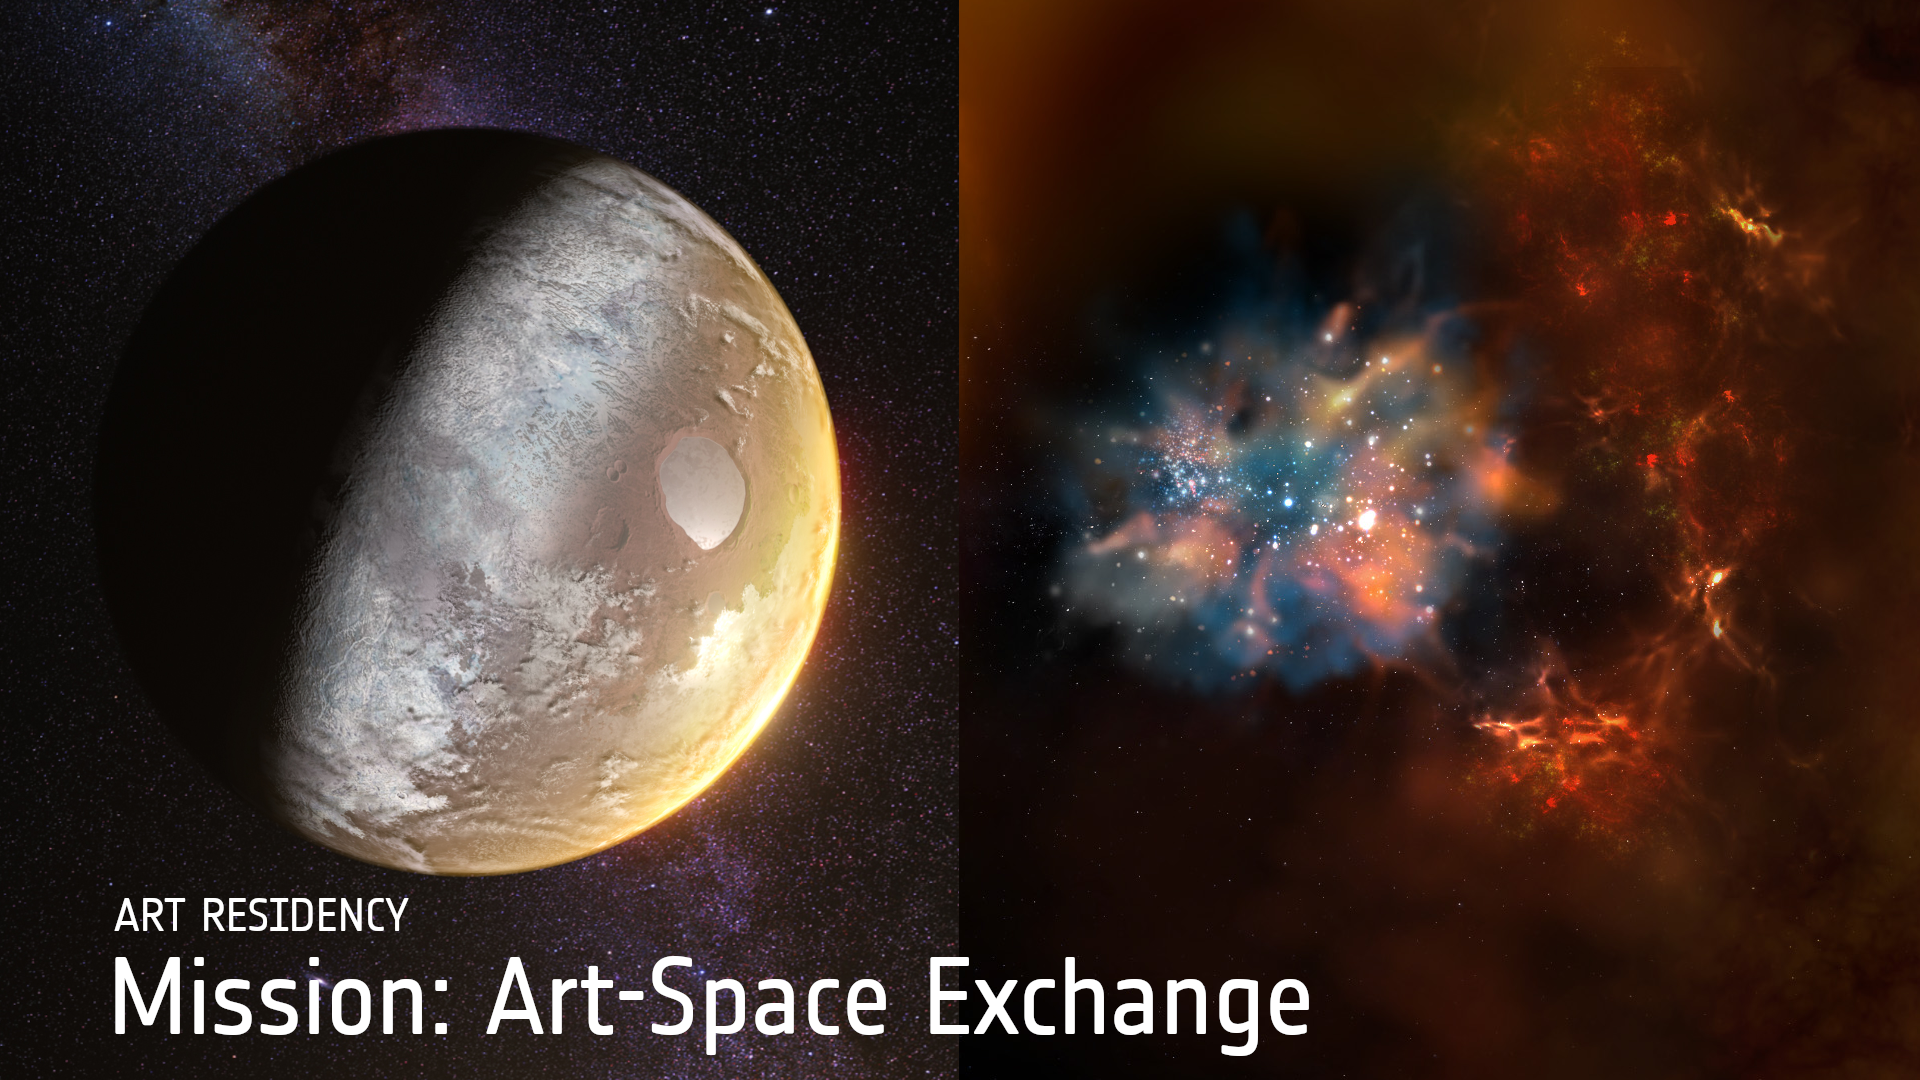 Art-Space exchange